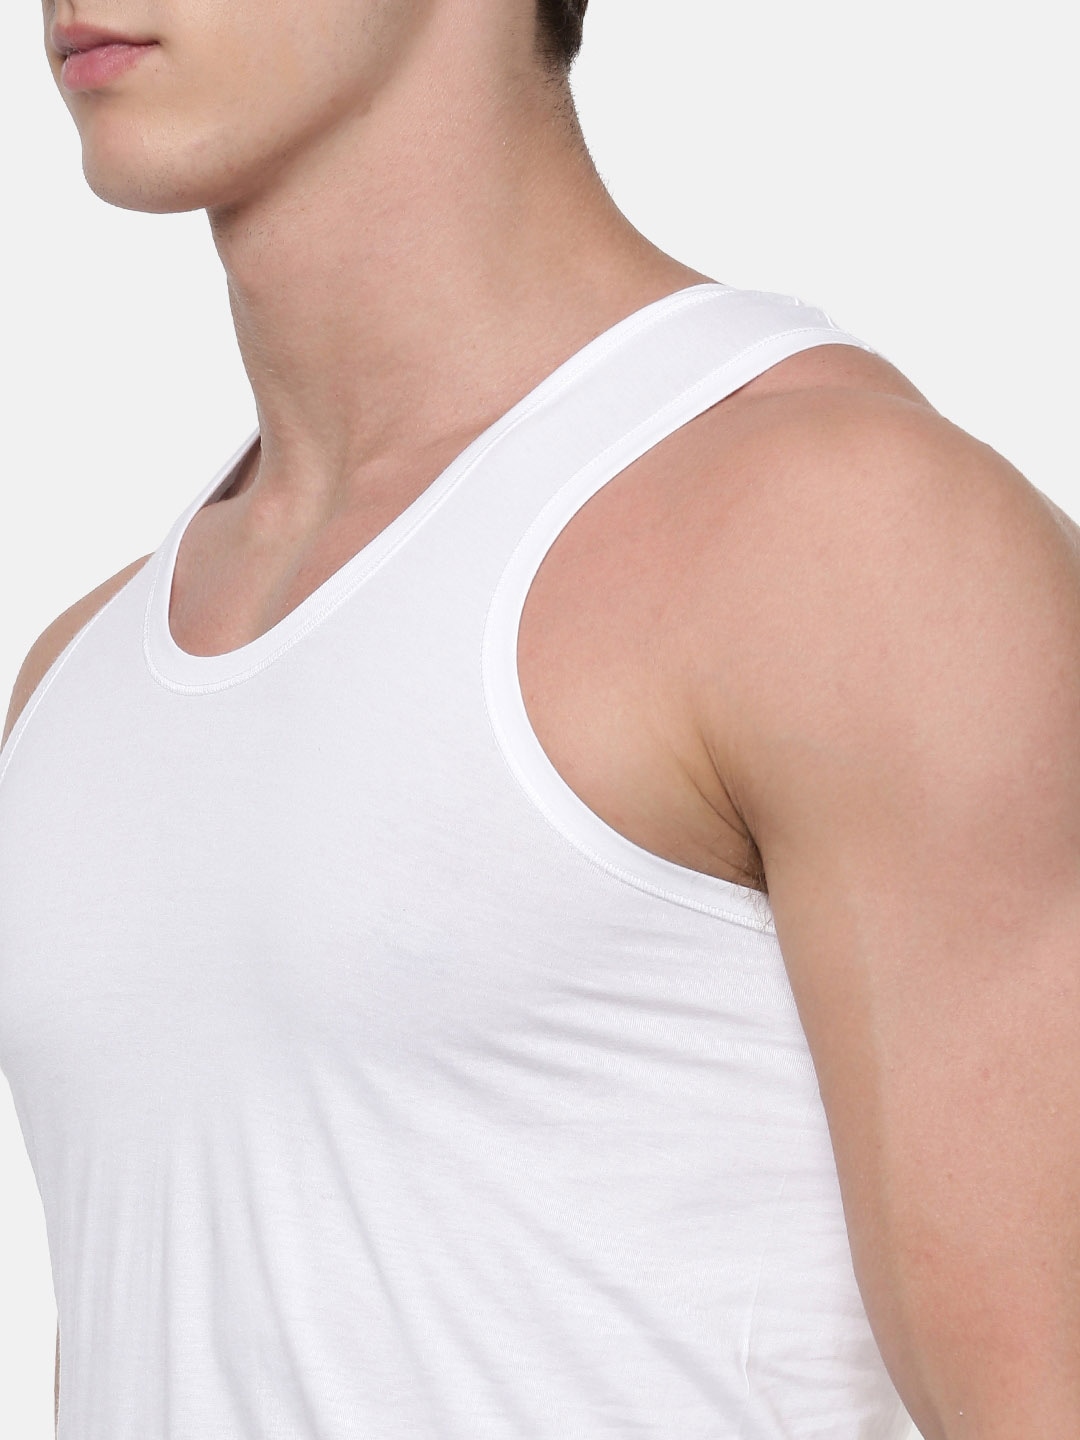 Clothing Innerwear Vests | RAMRAJ COTTON Men Pack Of 5 White Solid Pure Cotton Innerwear Vests - EK54645